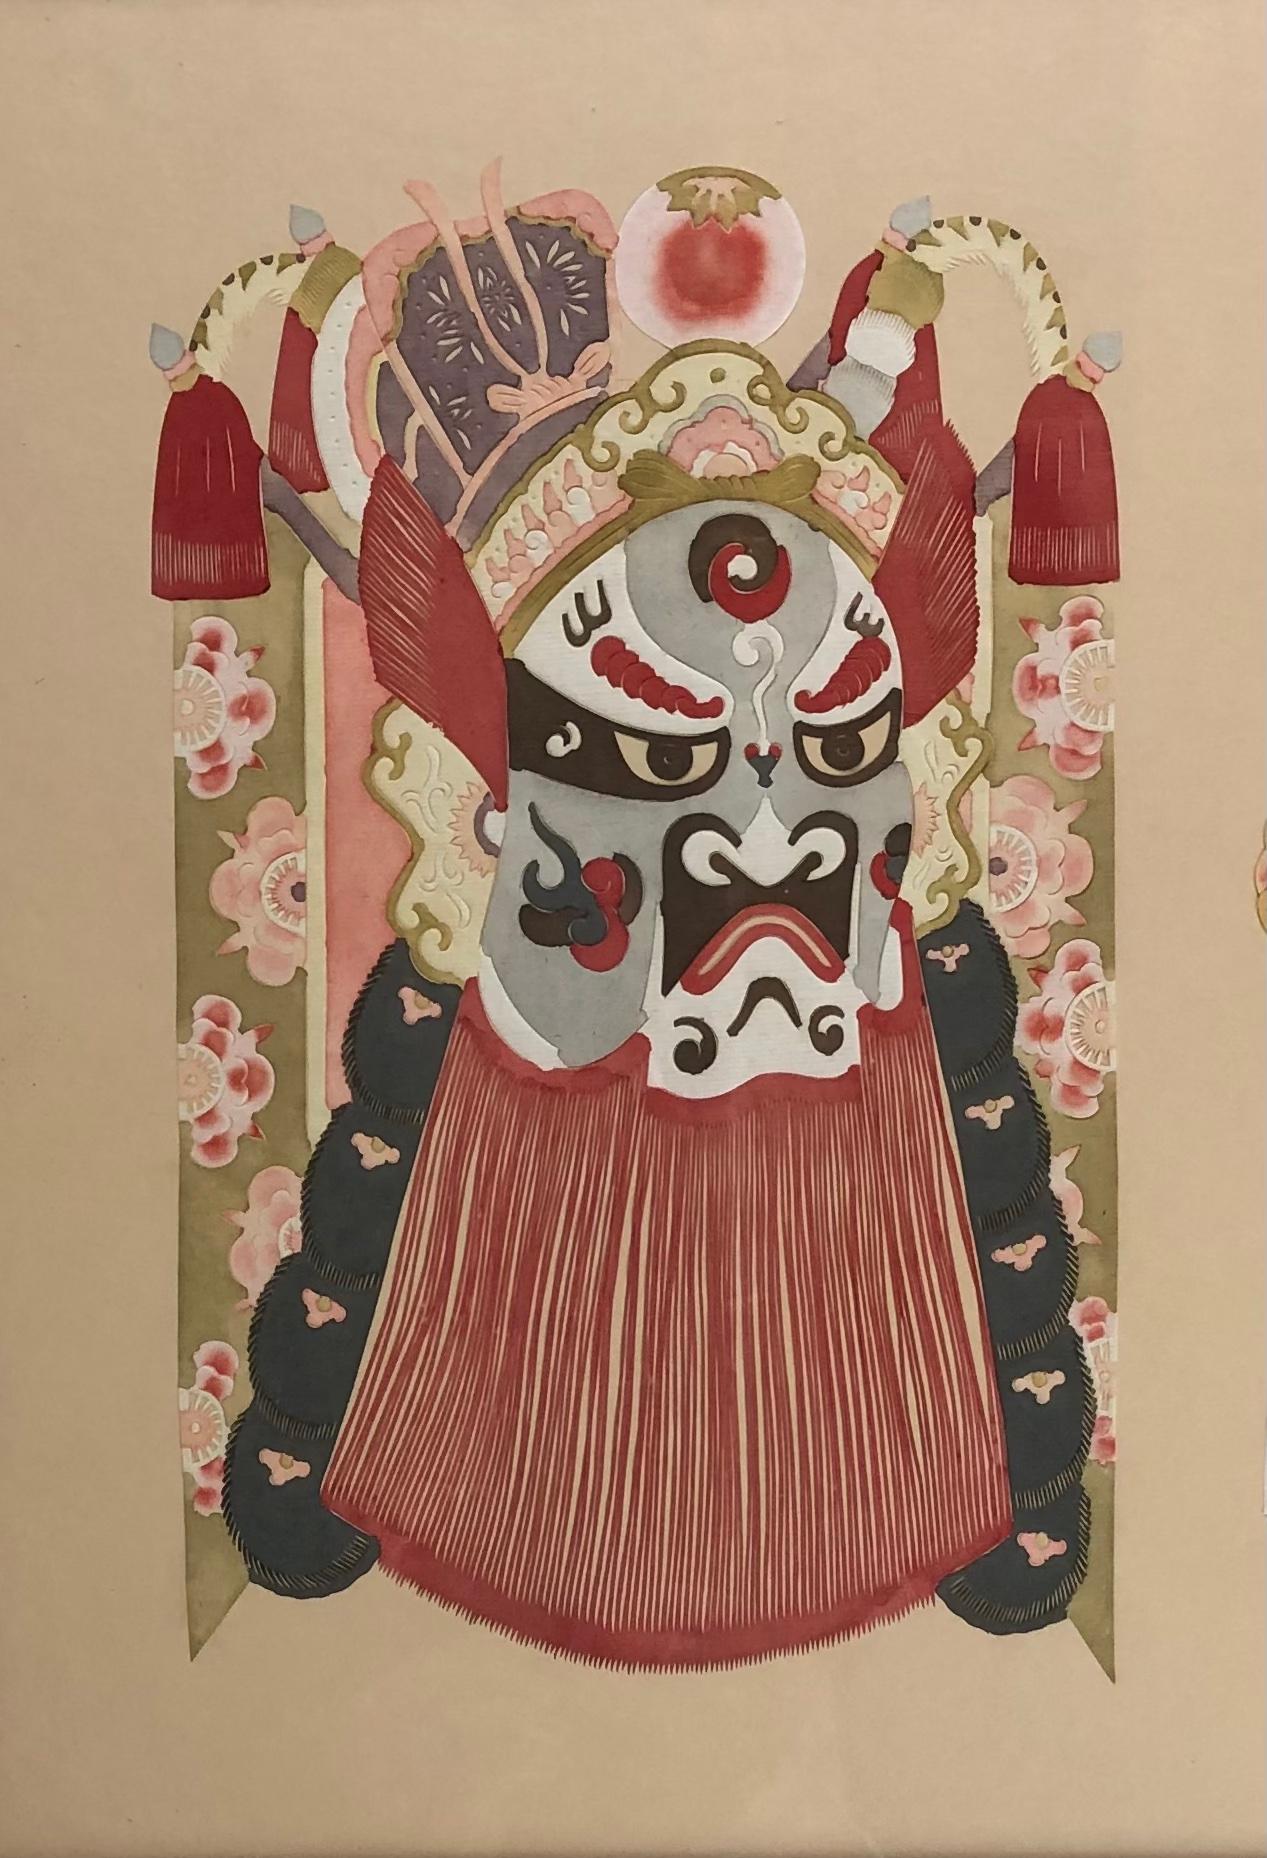 Une représentation décorative chinoise de grande taille, encadrée, de 5 masques de divinités cérémonielles, 20e siècle. Cette grande suspension murale de masques de divinités cérémonielles est faite de papier découpé de façon complexe, puis peinte à